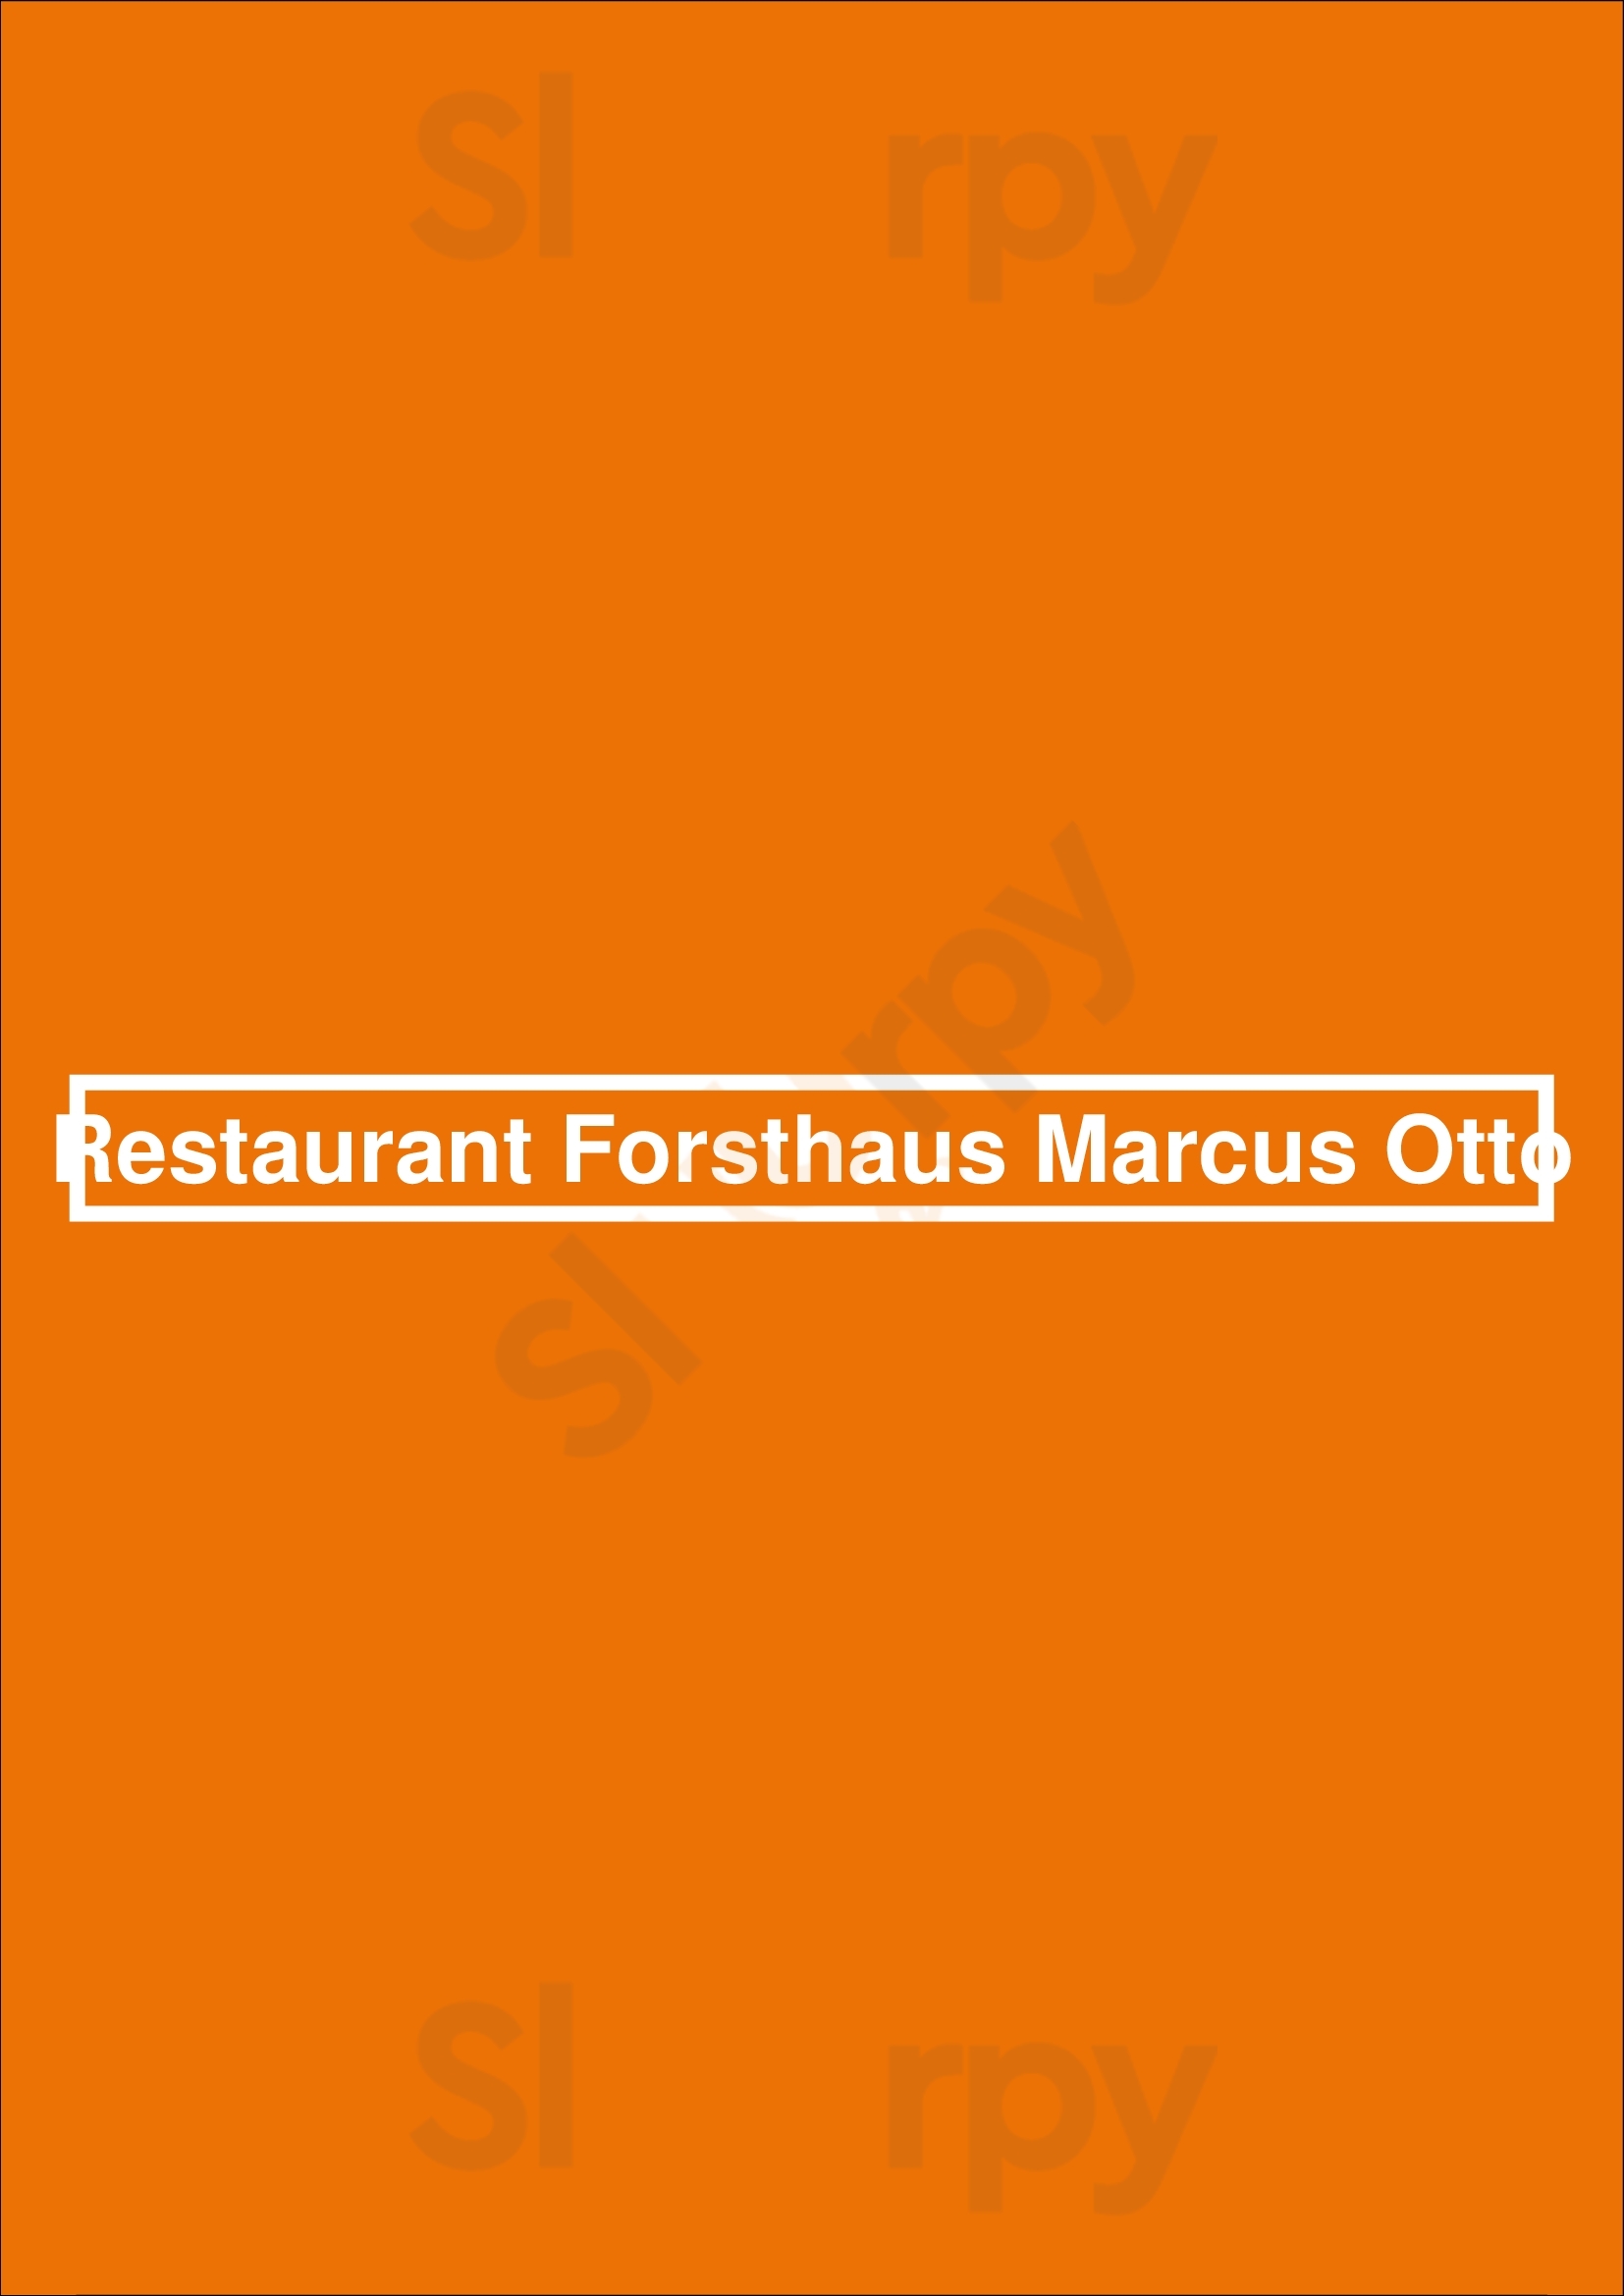 Restaurant Forsthaus Marcus Otto Reinsdorf Menu - 1